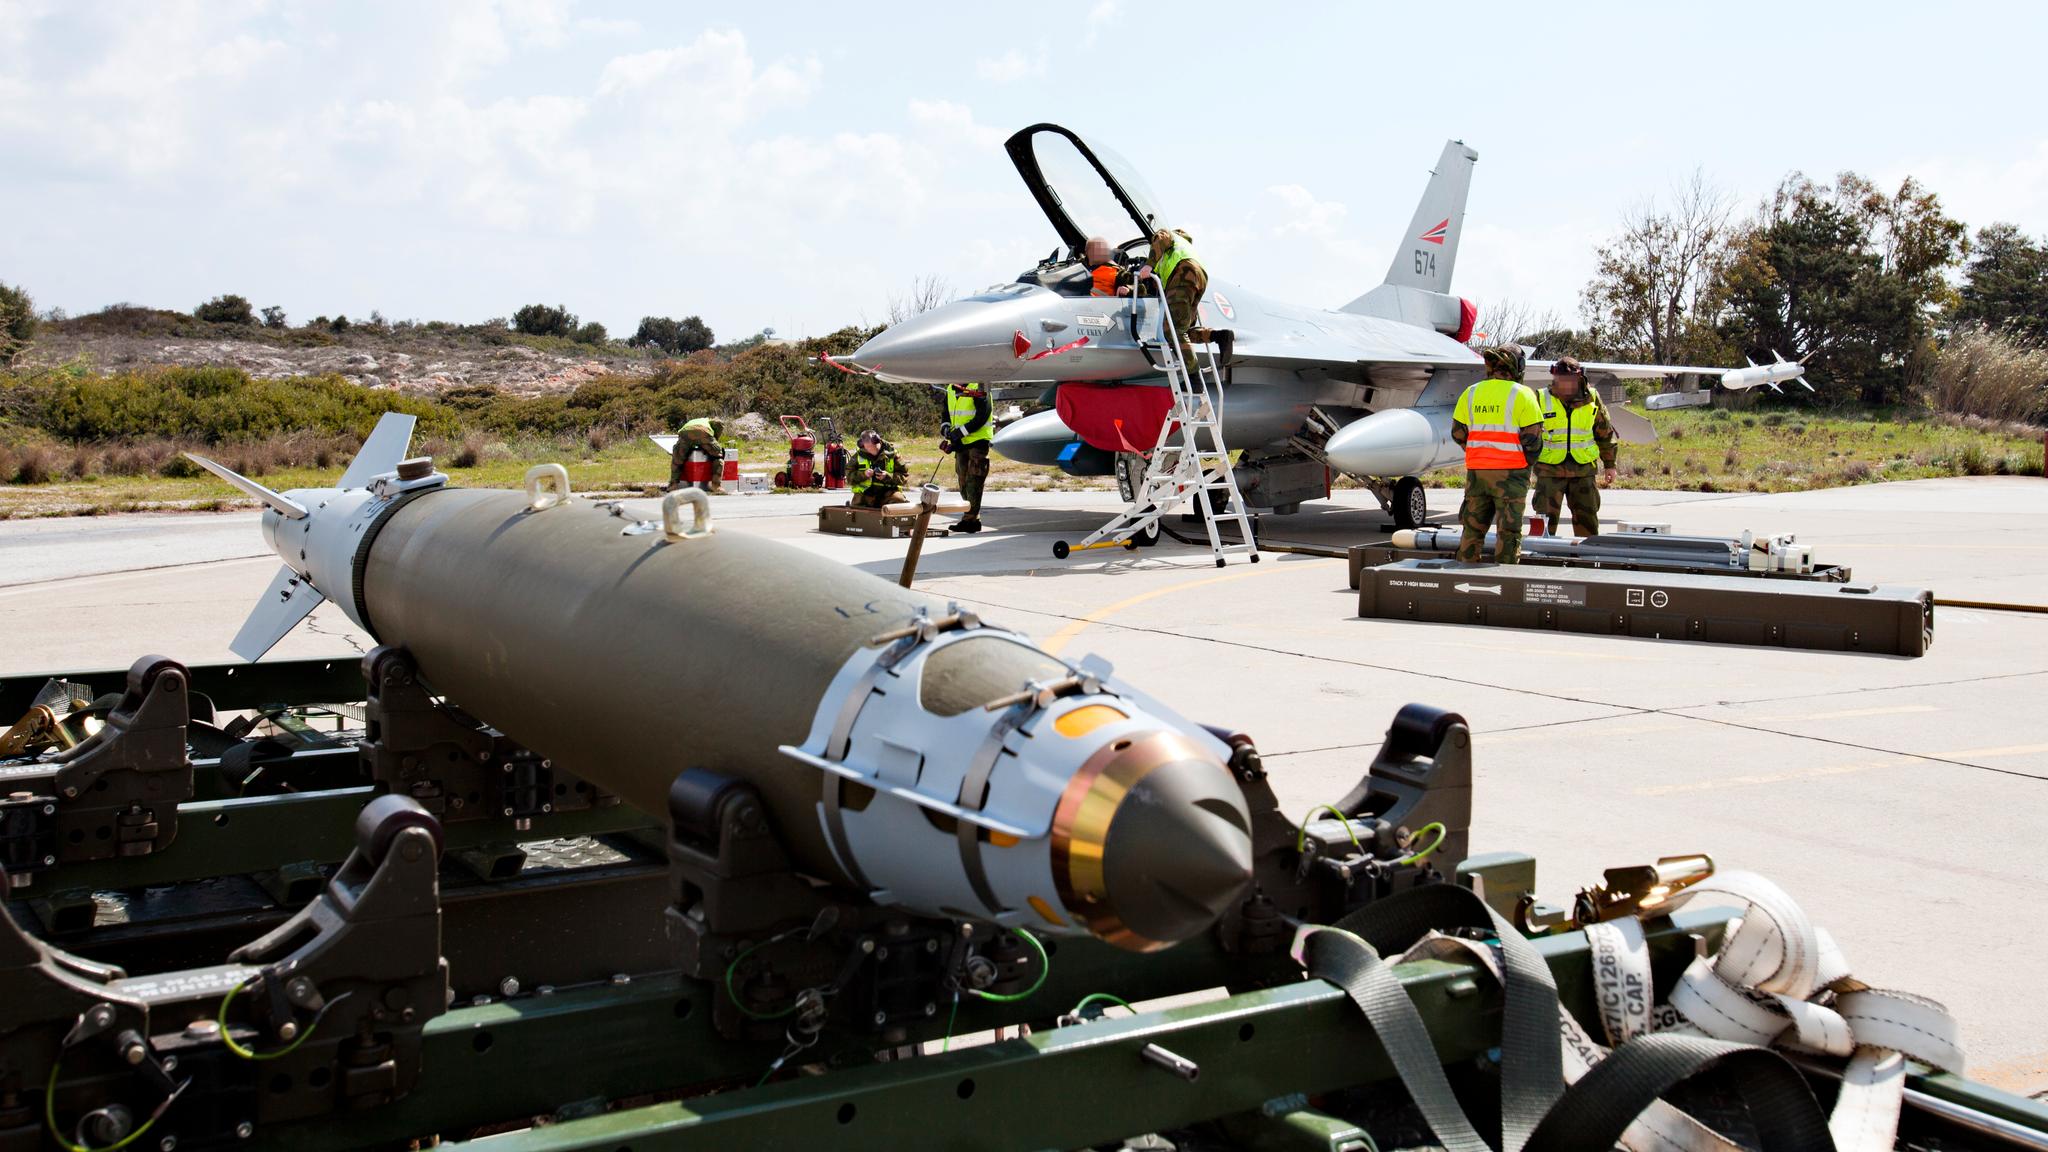 Nato bombet våren 2011 opprørere til makten i Libya, som siden har vært preget av kaos og anarki. Her lastet bomber inn i norske jagerfly på Kreta i mars 2011. 